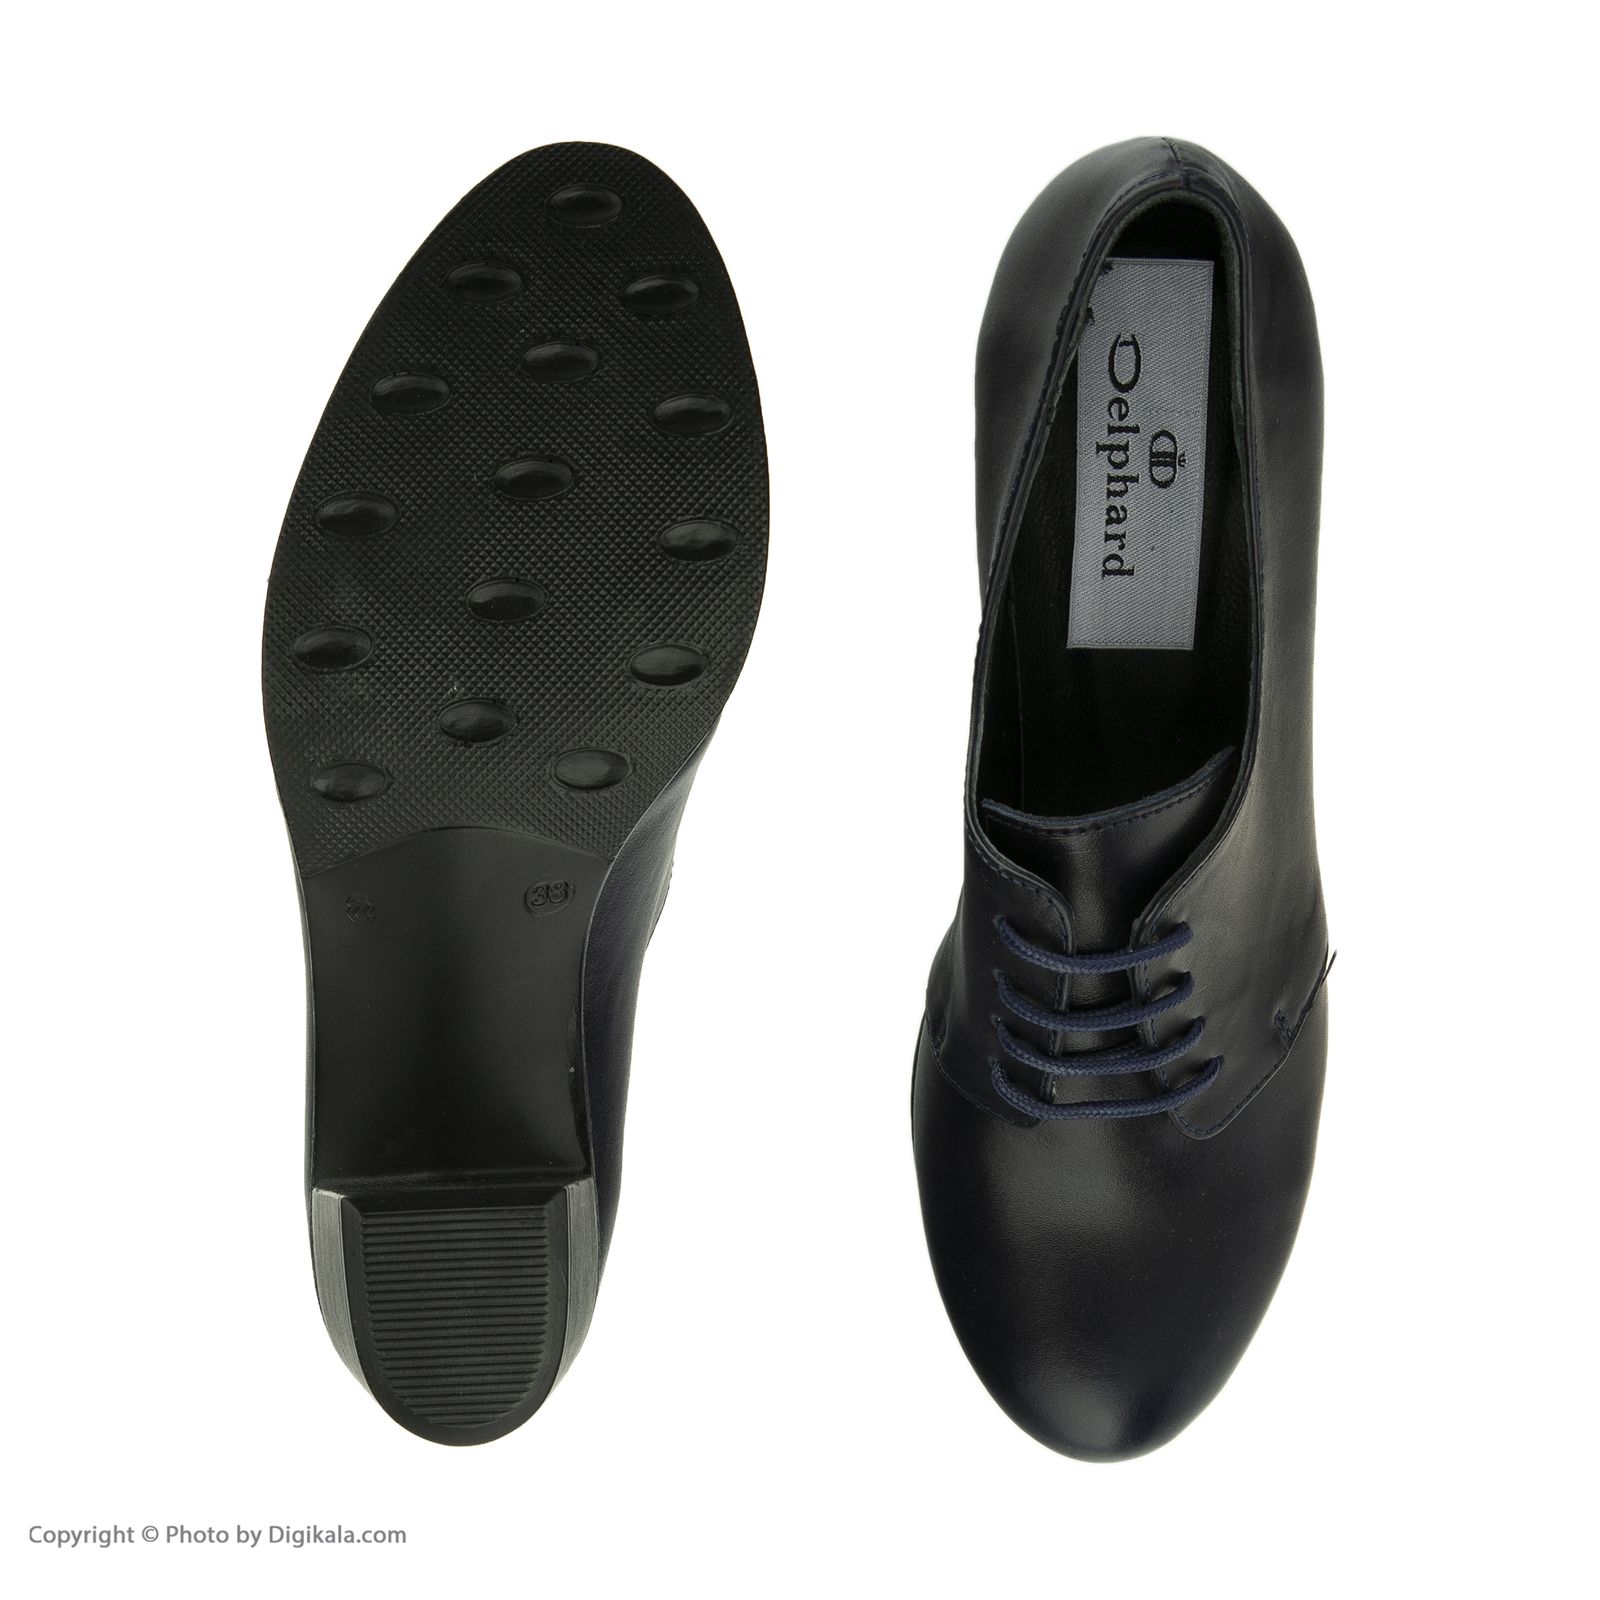  کفش زنانه دلفارد مدل 5m02a500103 -  - 6